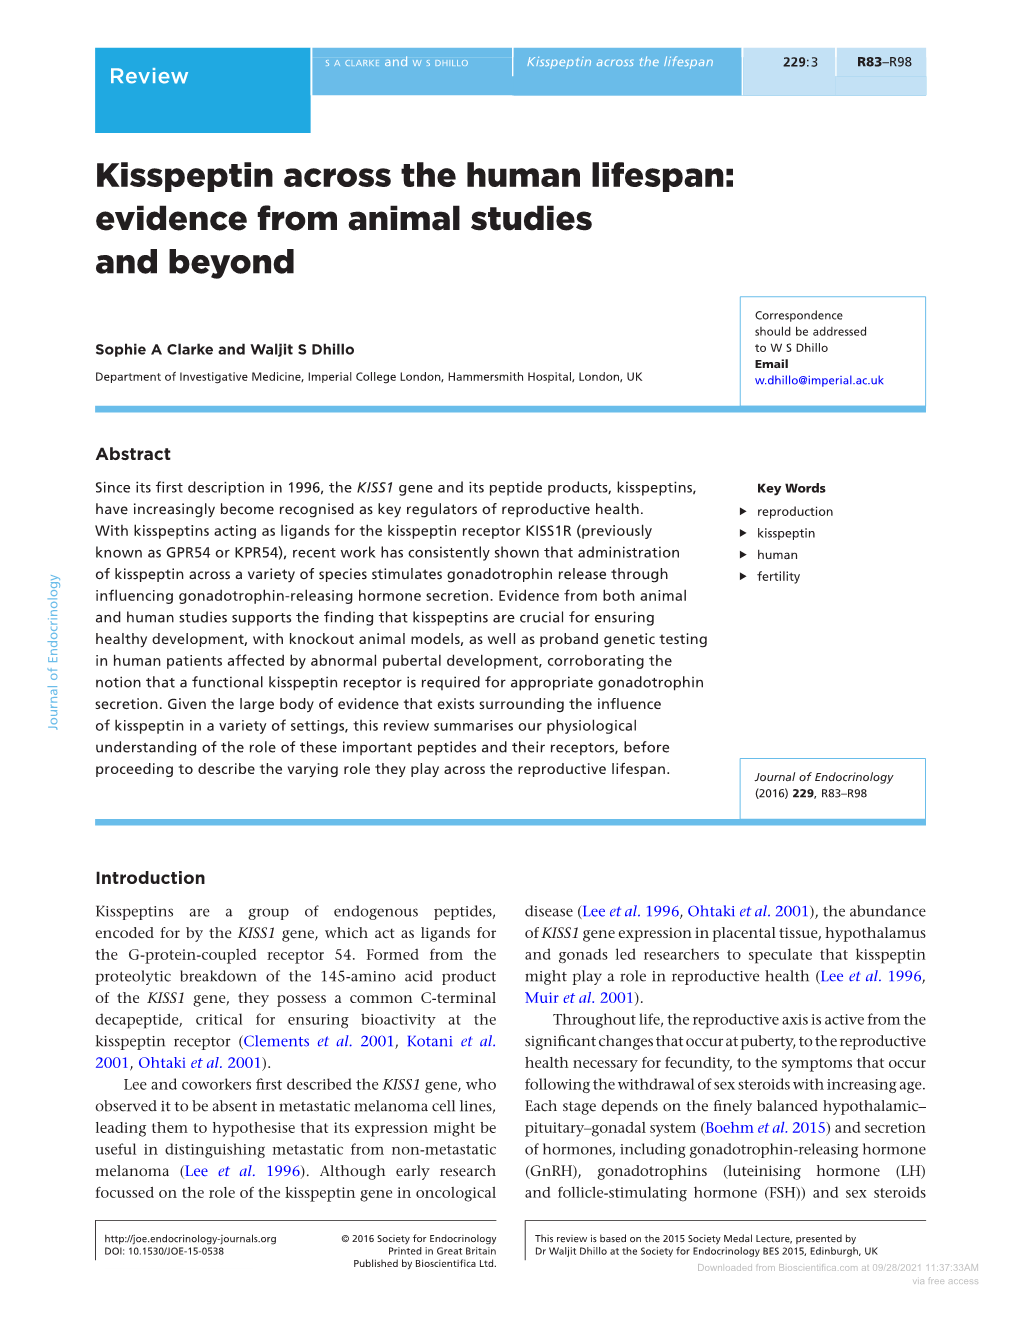 Kisspeptin Across the Human Lifespan:Evidence from Animal